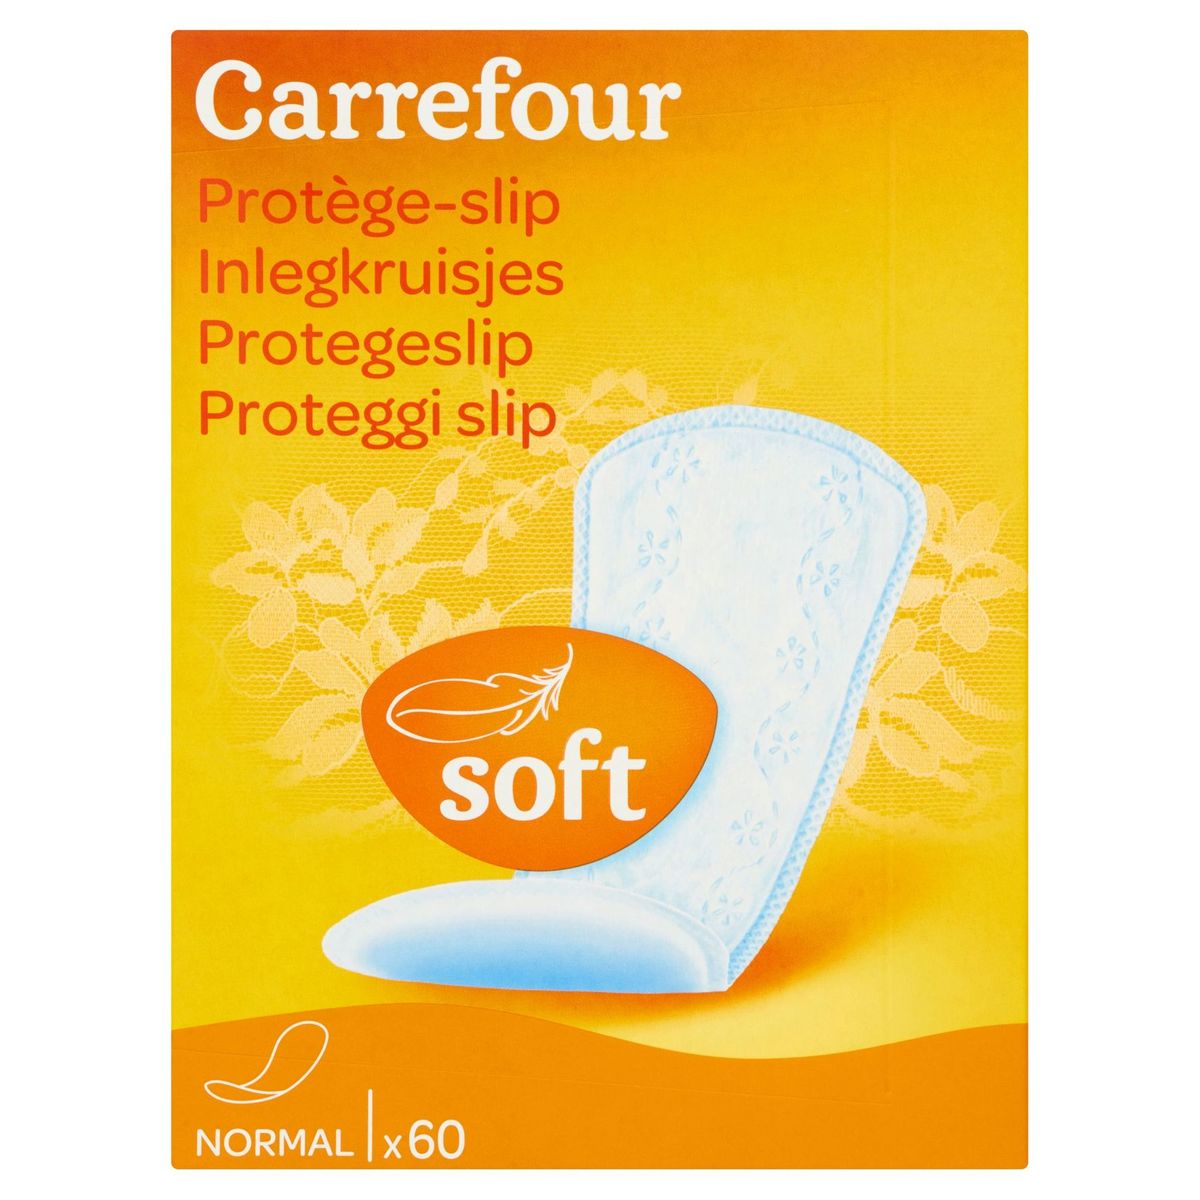 Carrefour Protège-slip Soft Normal 60 Pièces